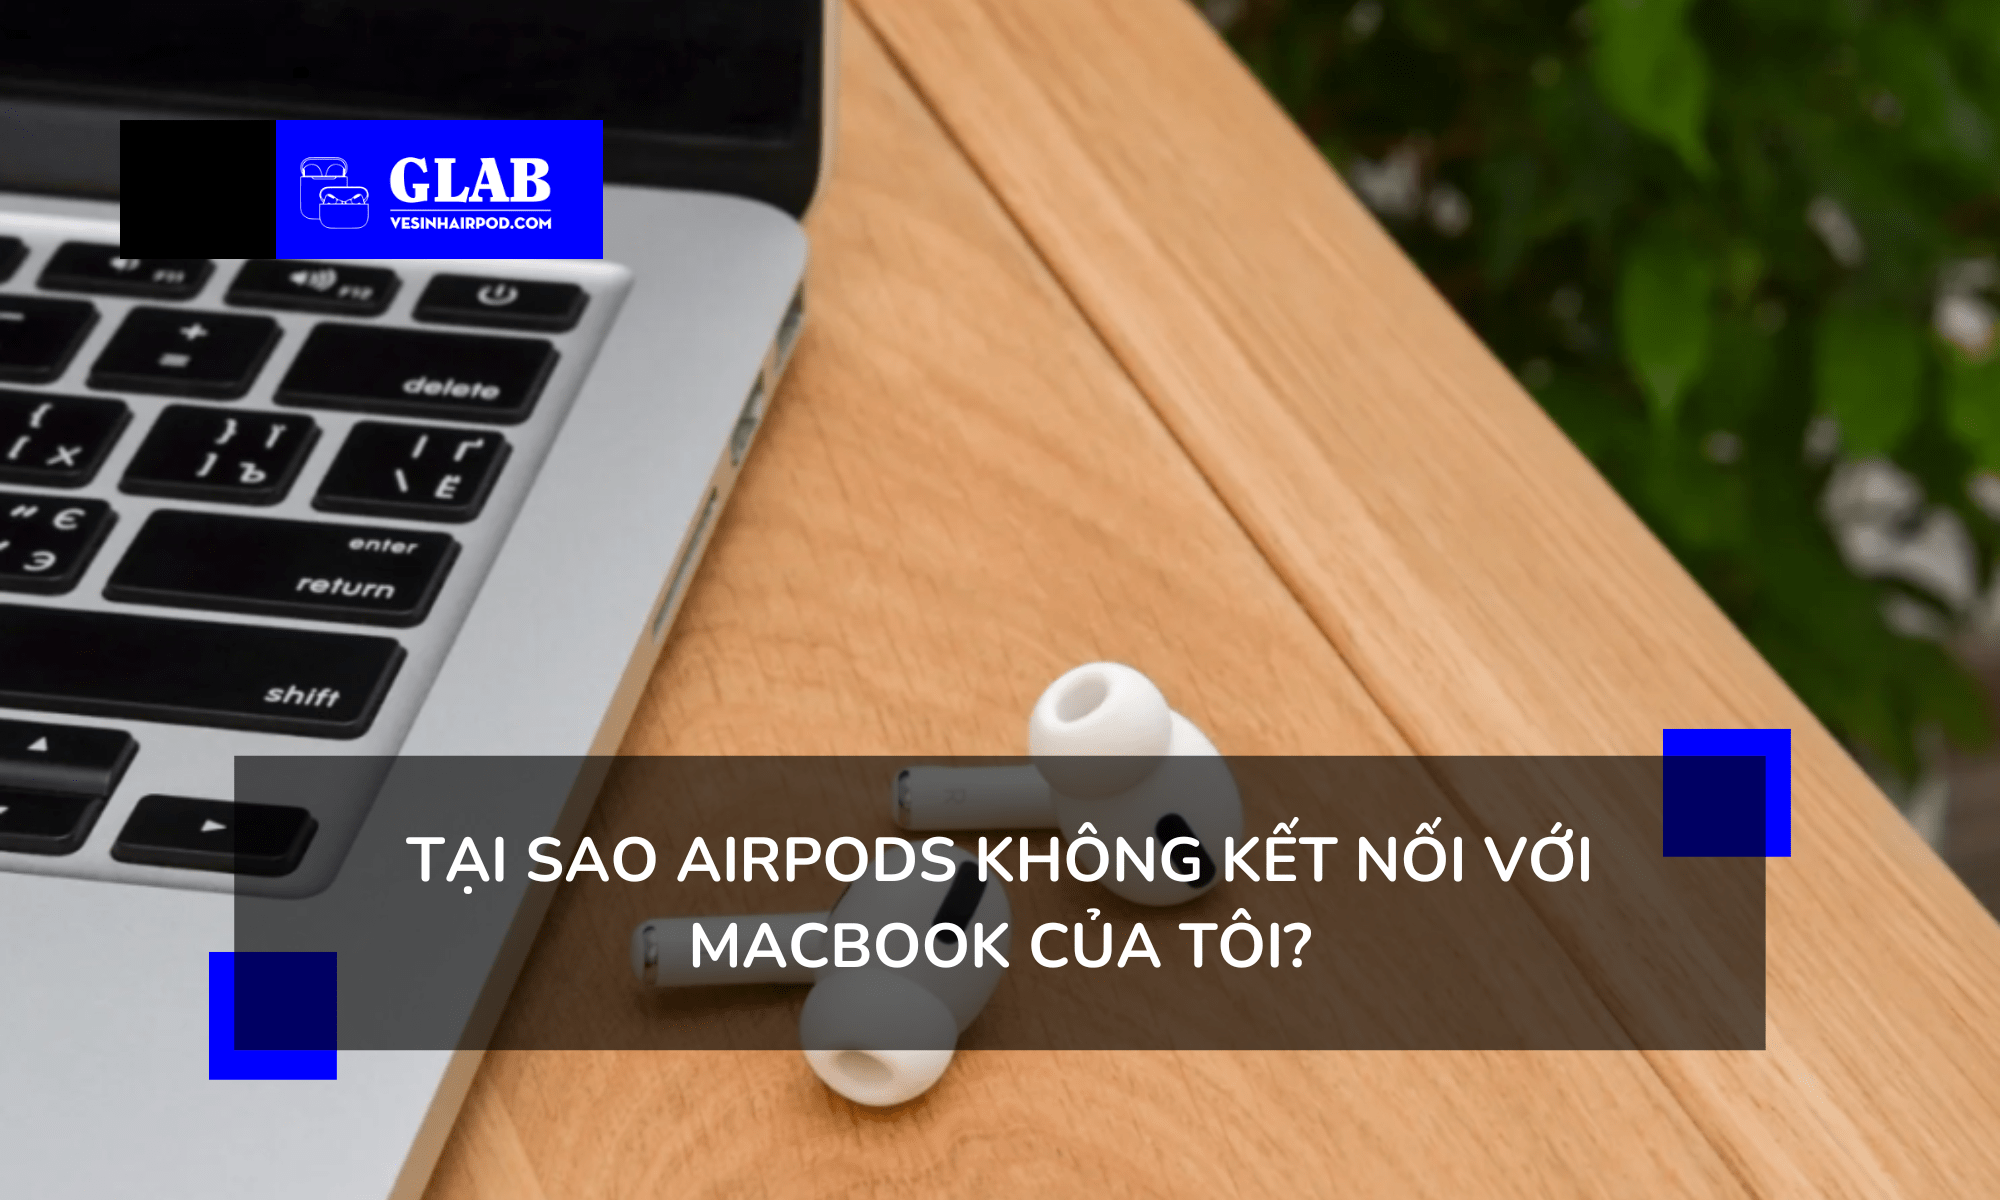 cach-ket-noi-2-airpods-voi-macbook